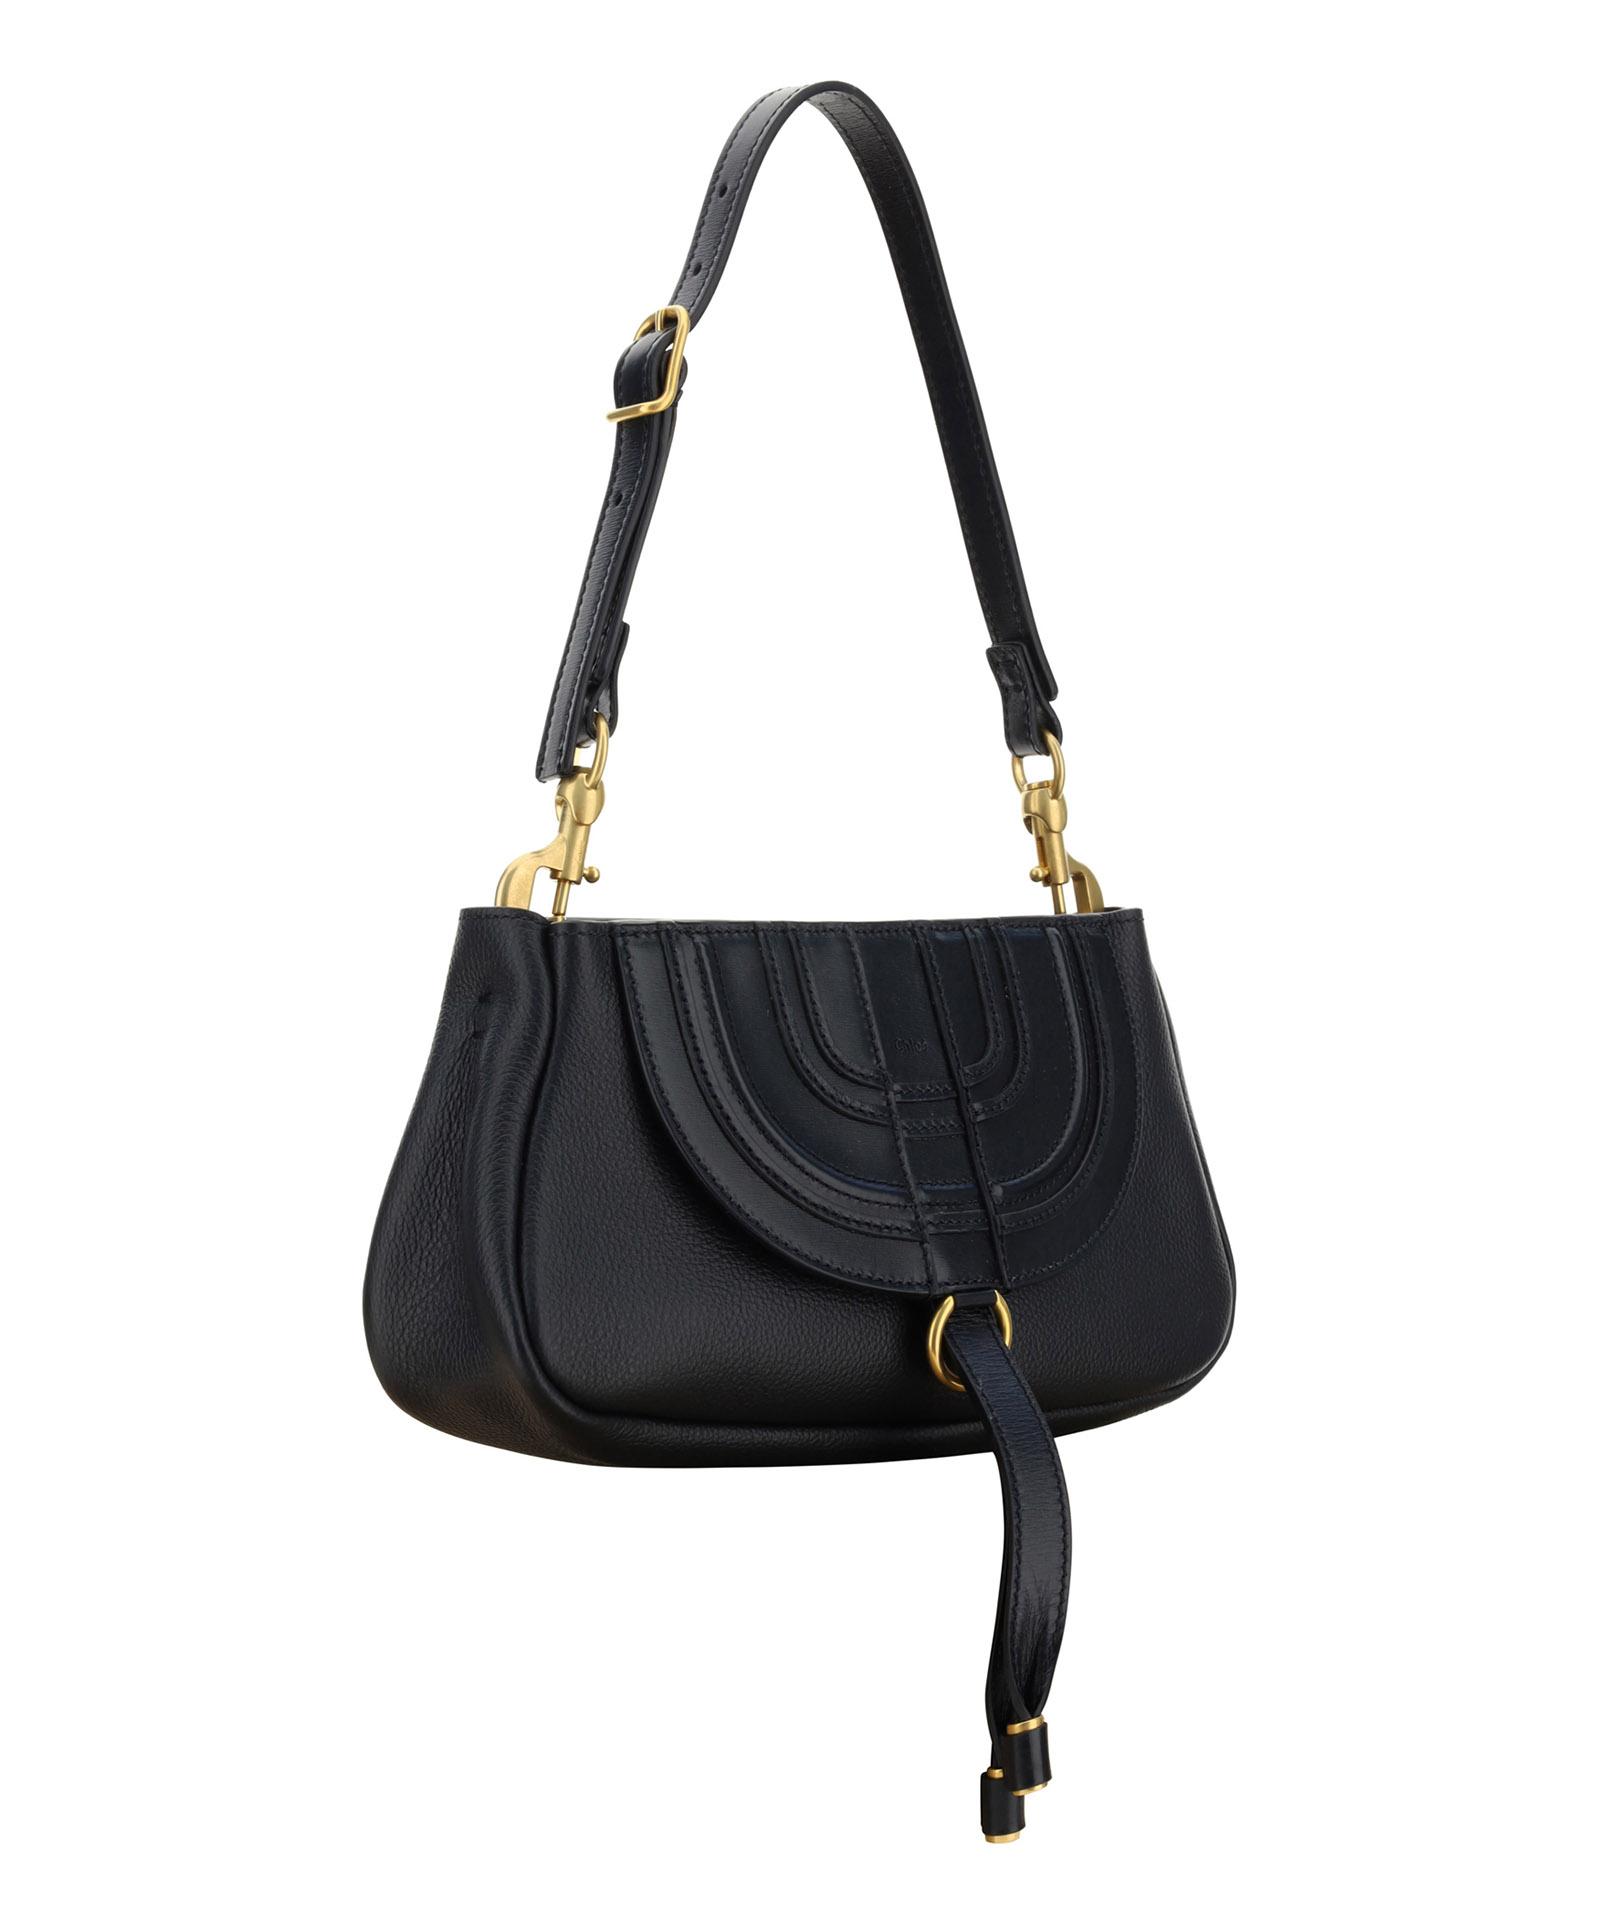 Chloé Women's 'marcie' Shoulder Bag - Black - Shoulder Bags